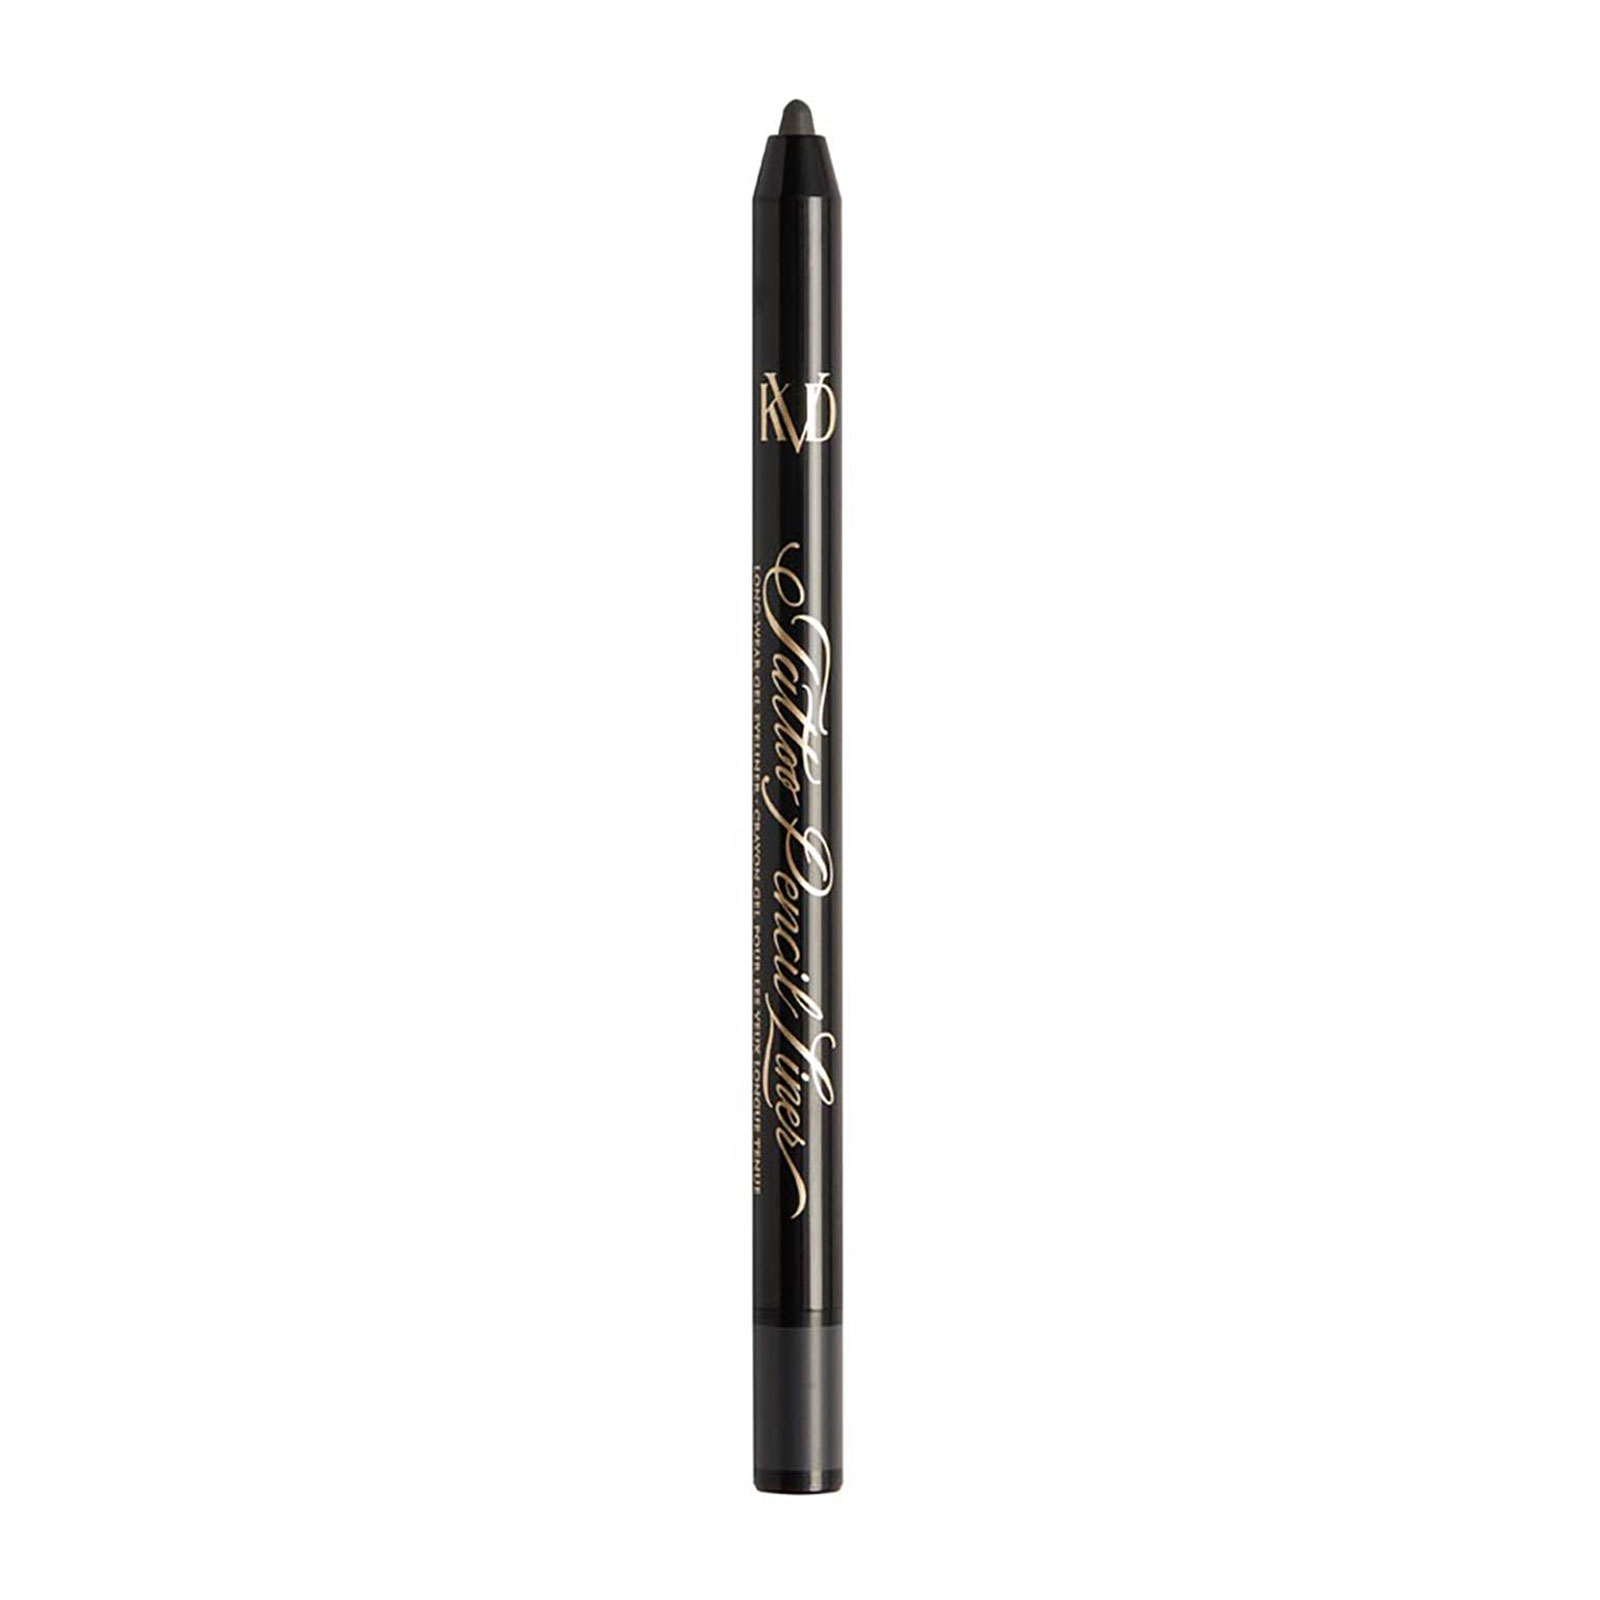 Kvd Beauty Tattoo Pencil Liner Waterproof Long-Wear Gel Eyeliner 0.5G Magnetite Gray